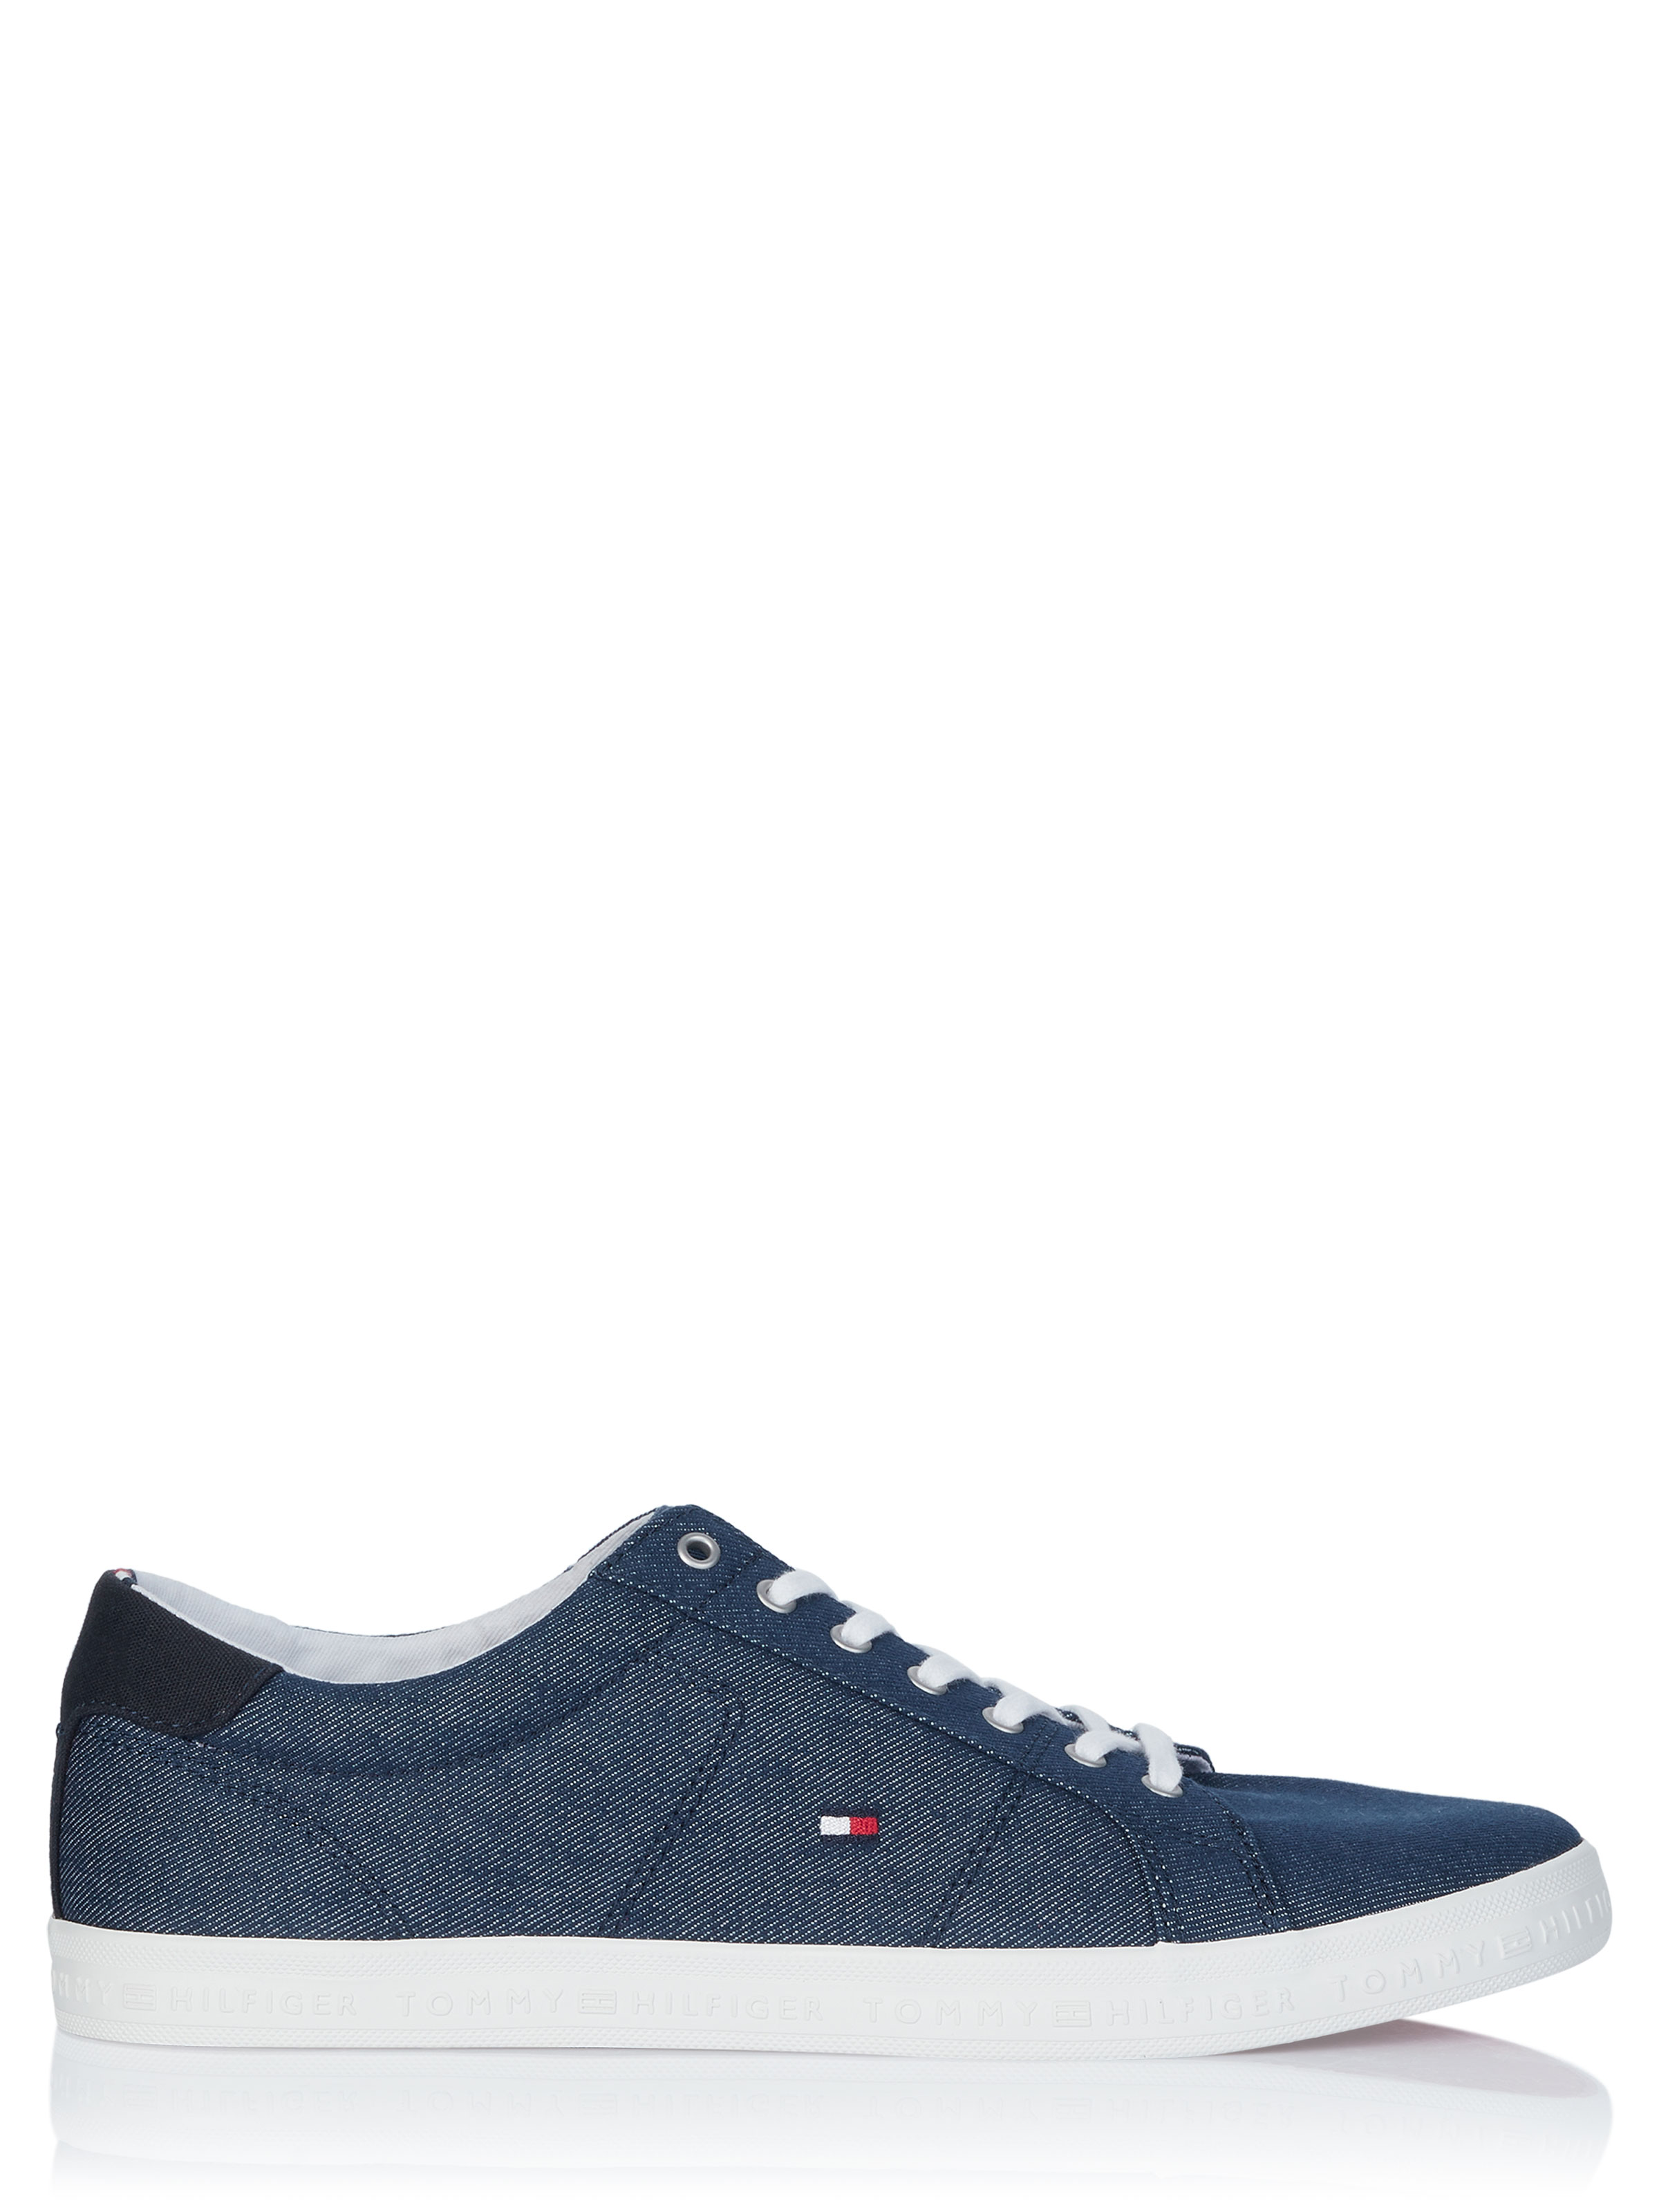 Hilfiger Shoe blue on SALE | Fashionesta